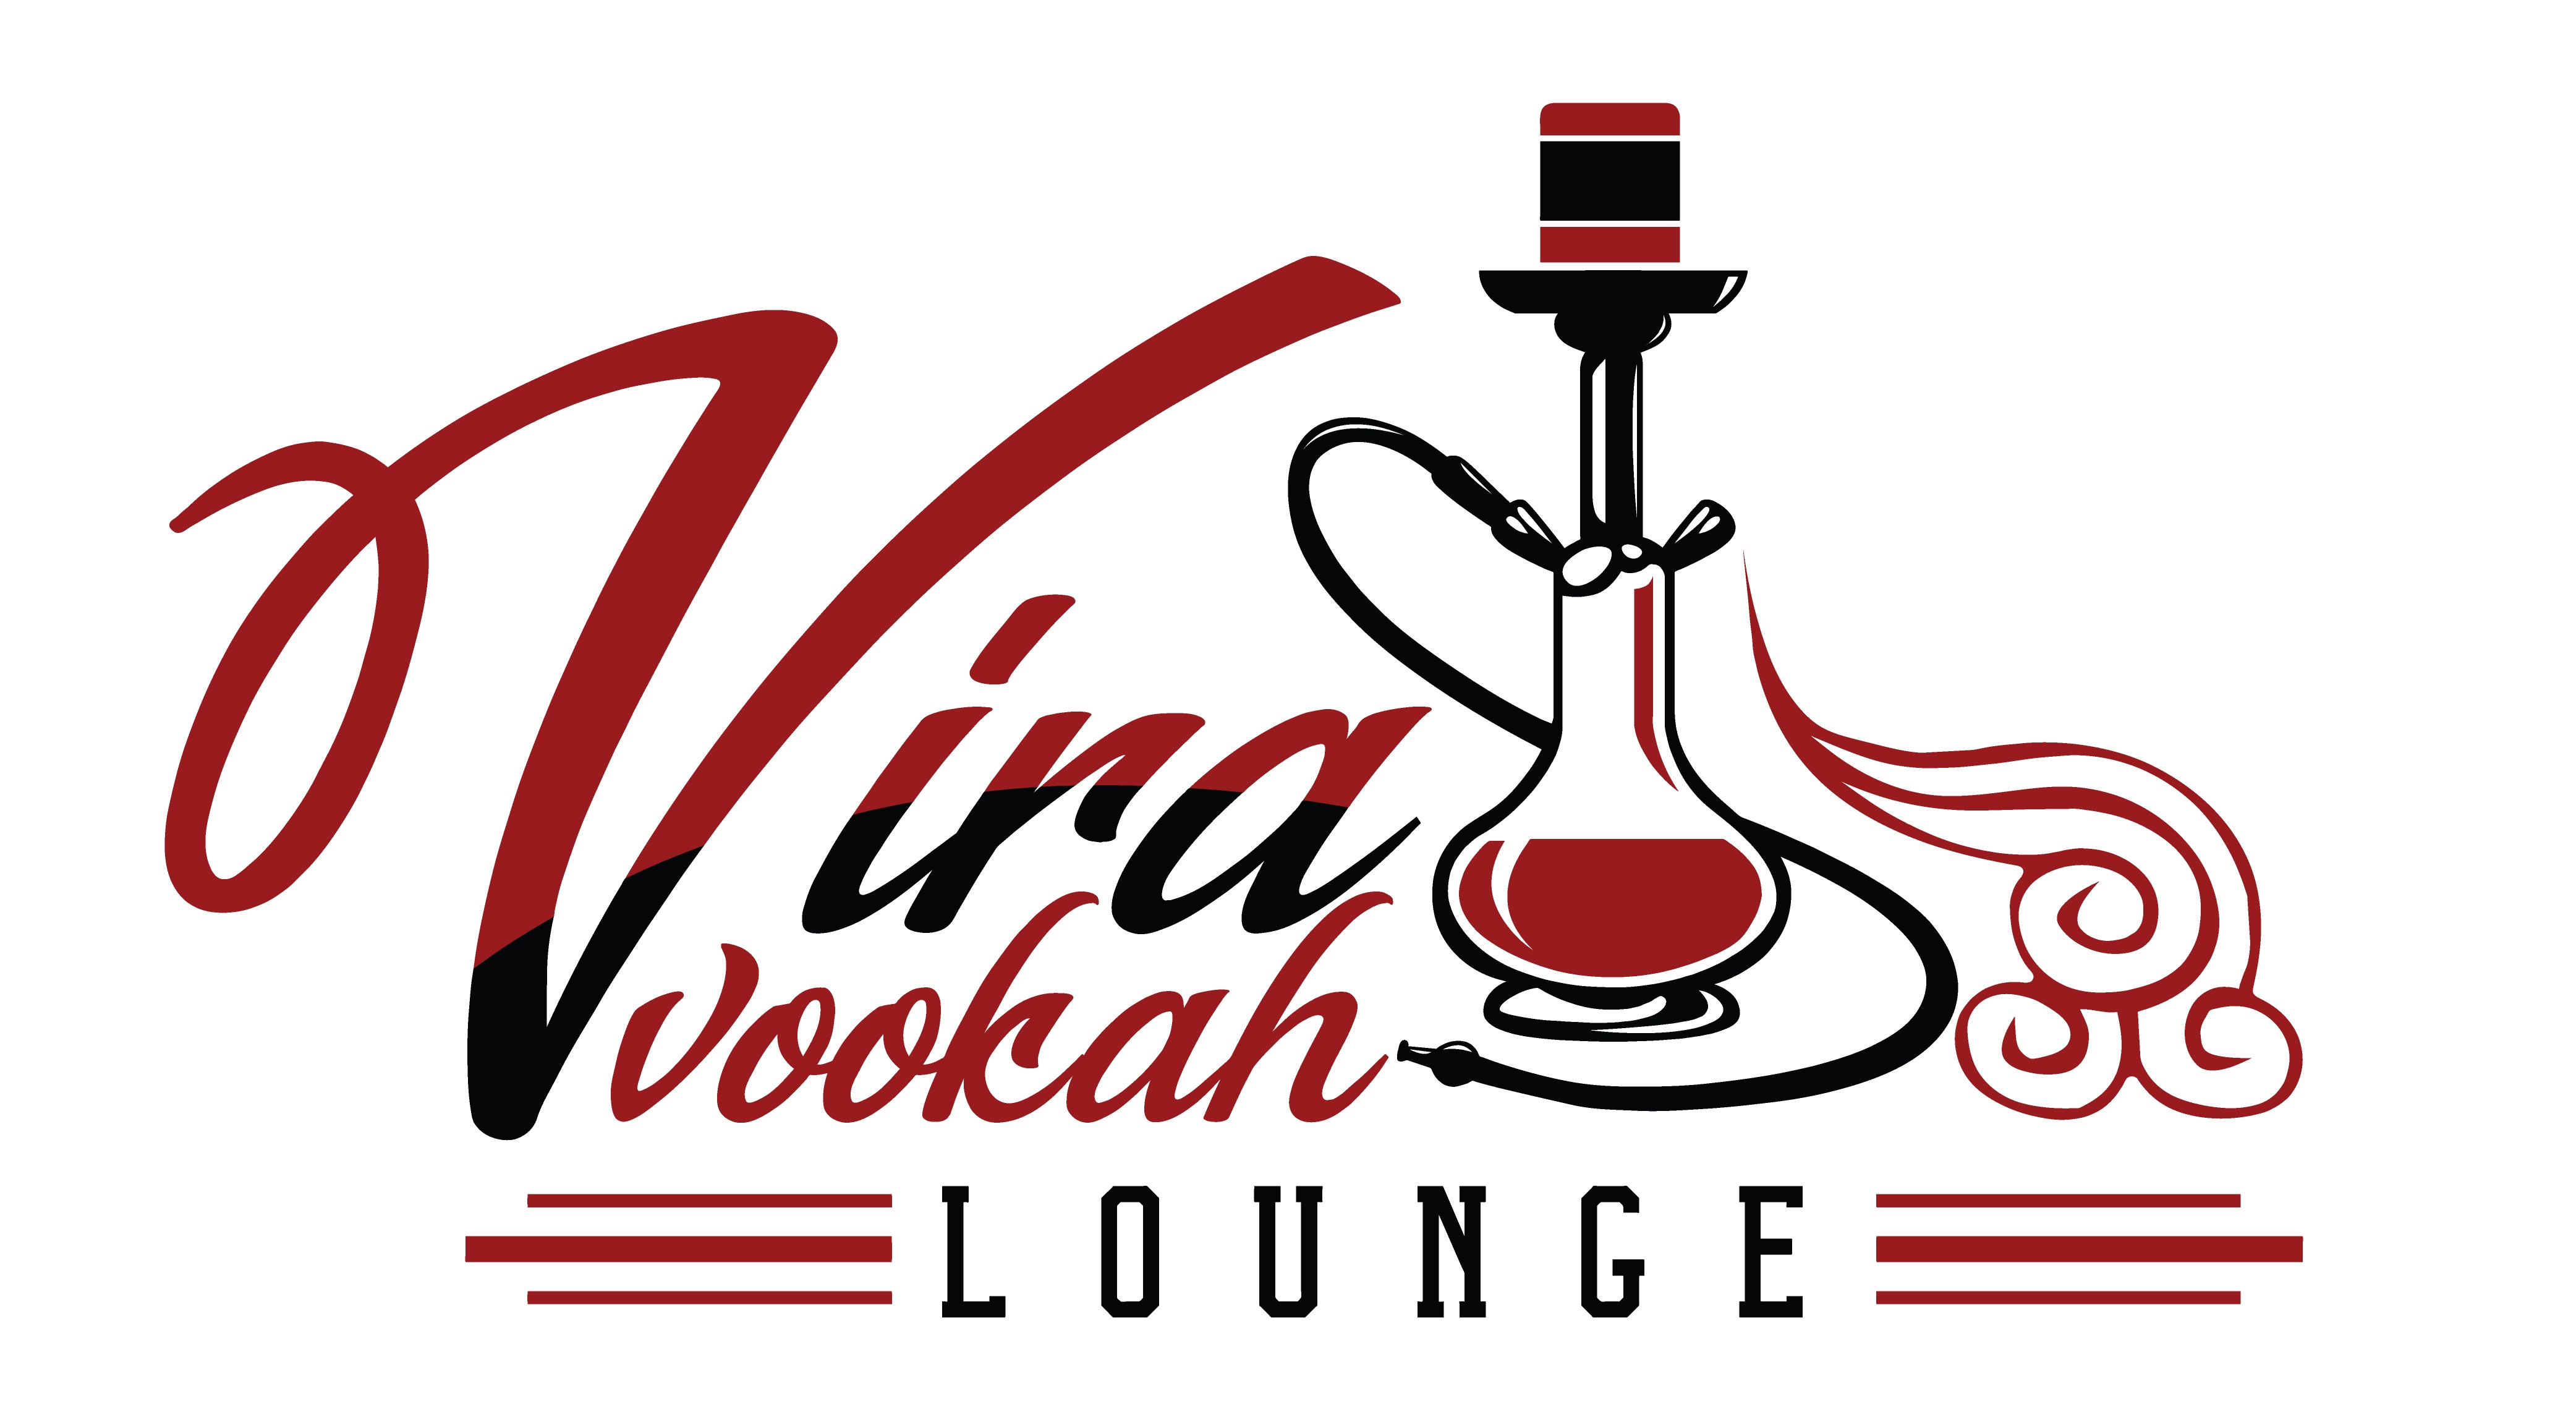 Vira-Vookah-Lounge-logo.jpg